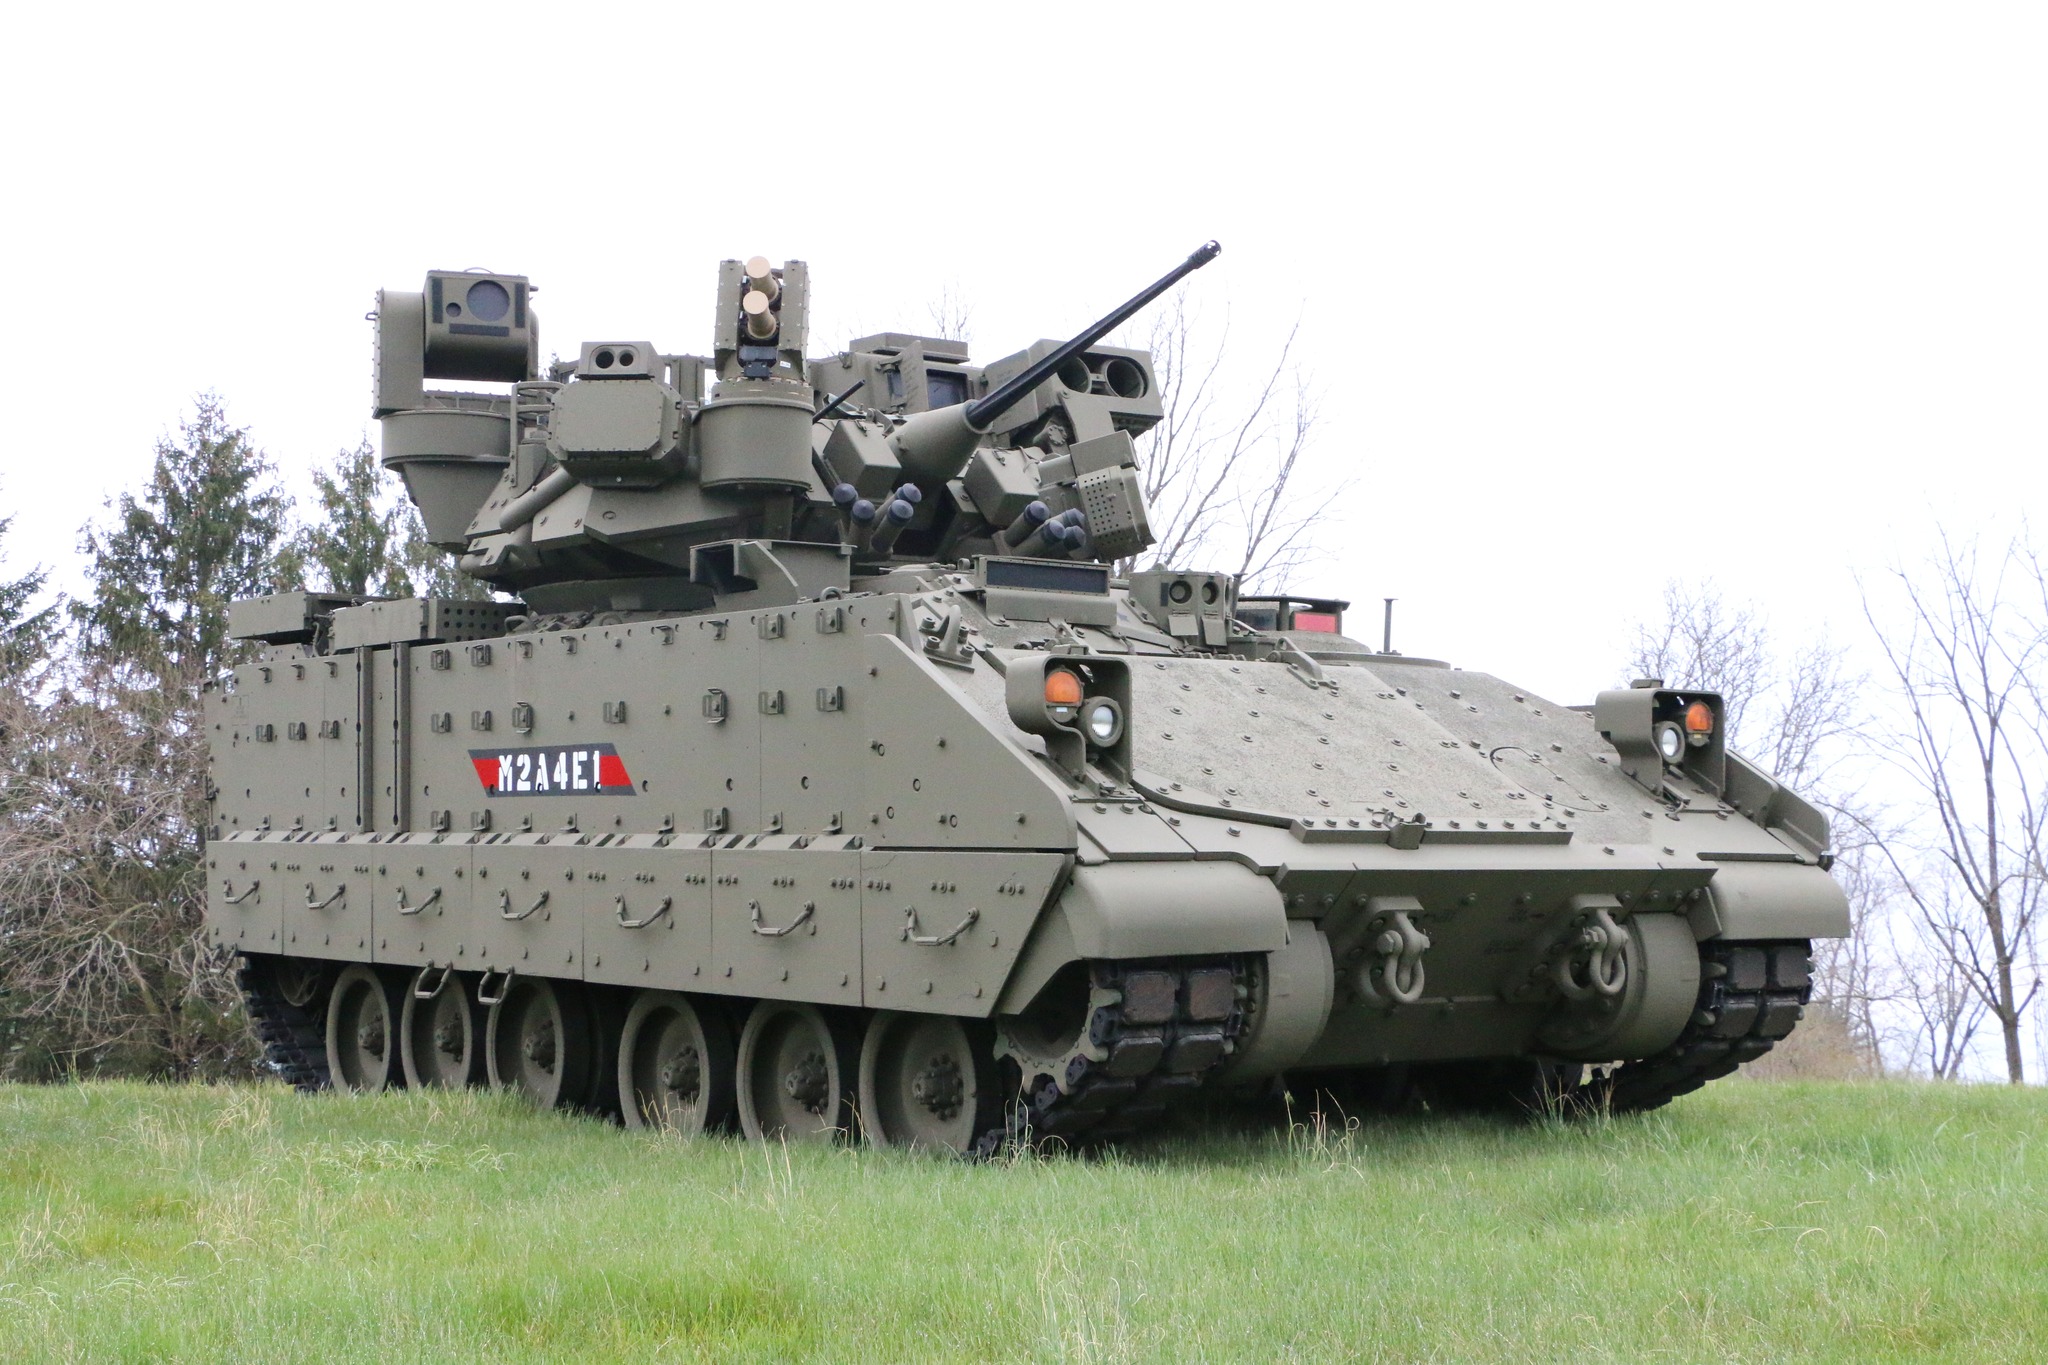 USA kommer att köpa Bradley infanteristridsfordon i en ny M2A4E1-variant med förbättrade styr- och försvarssystem